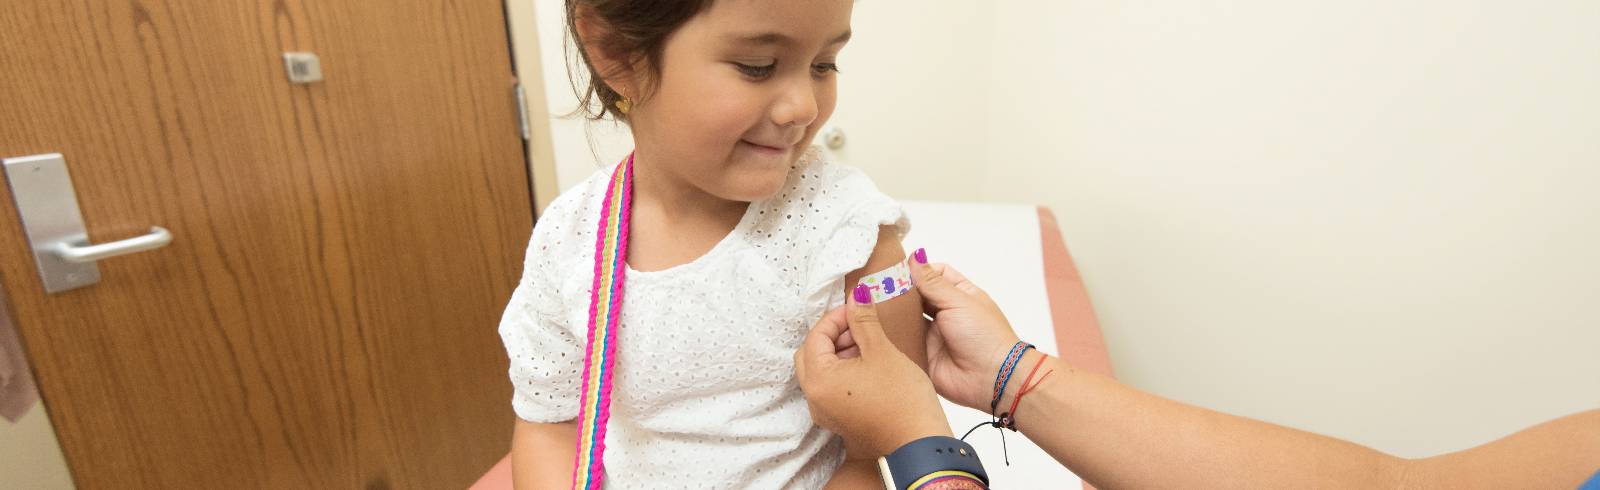 Wien ermöglicht Impfungen für 5-12-Jährige